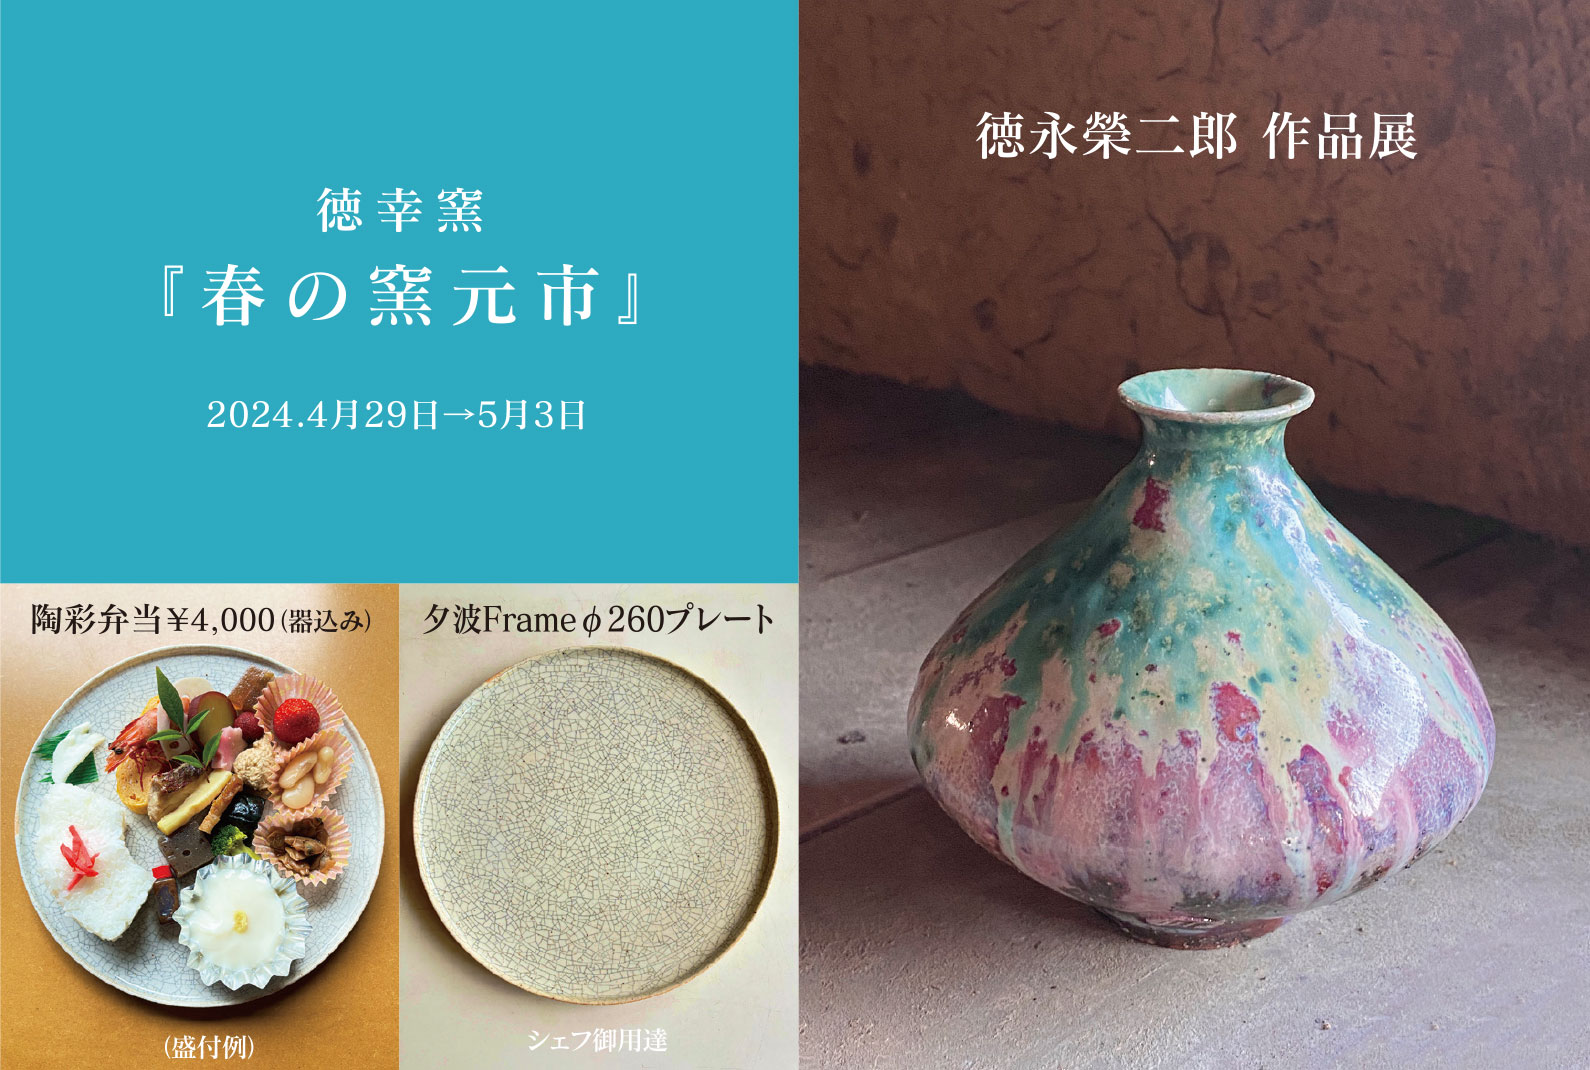 徳幸窯の春の陶器市、徳永榮二郎作品展